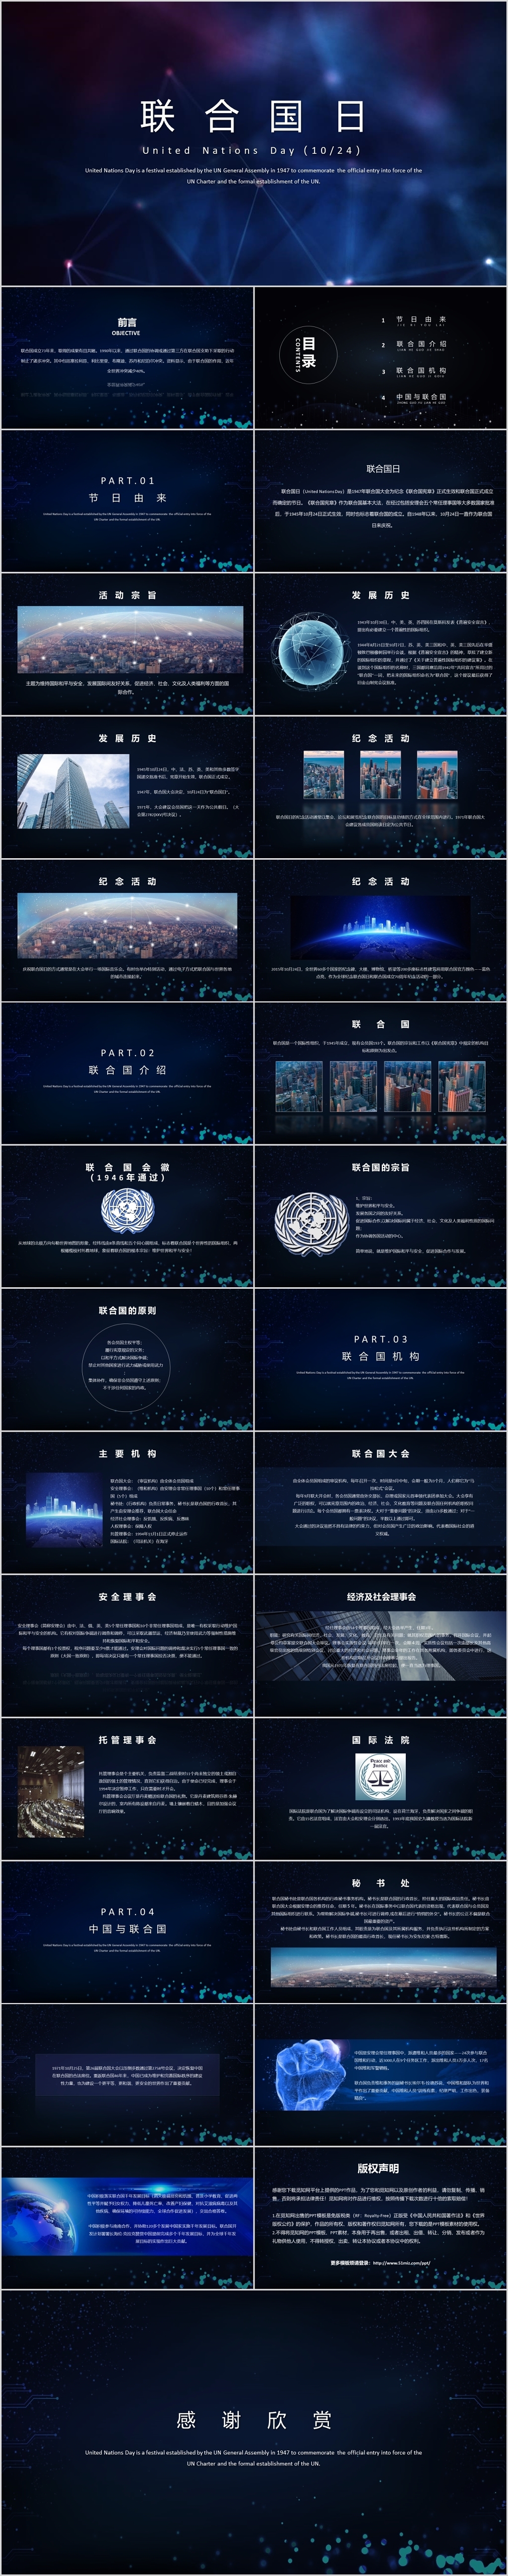 蓝色科技风格联合国日PPT模板